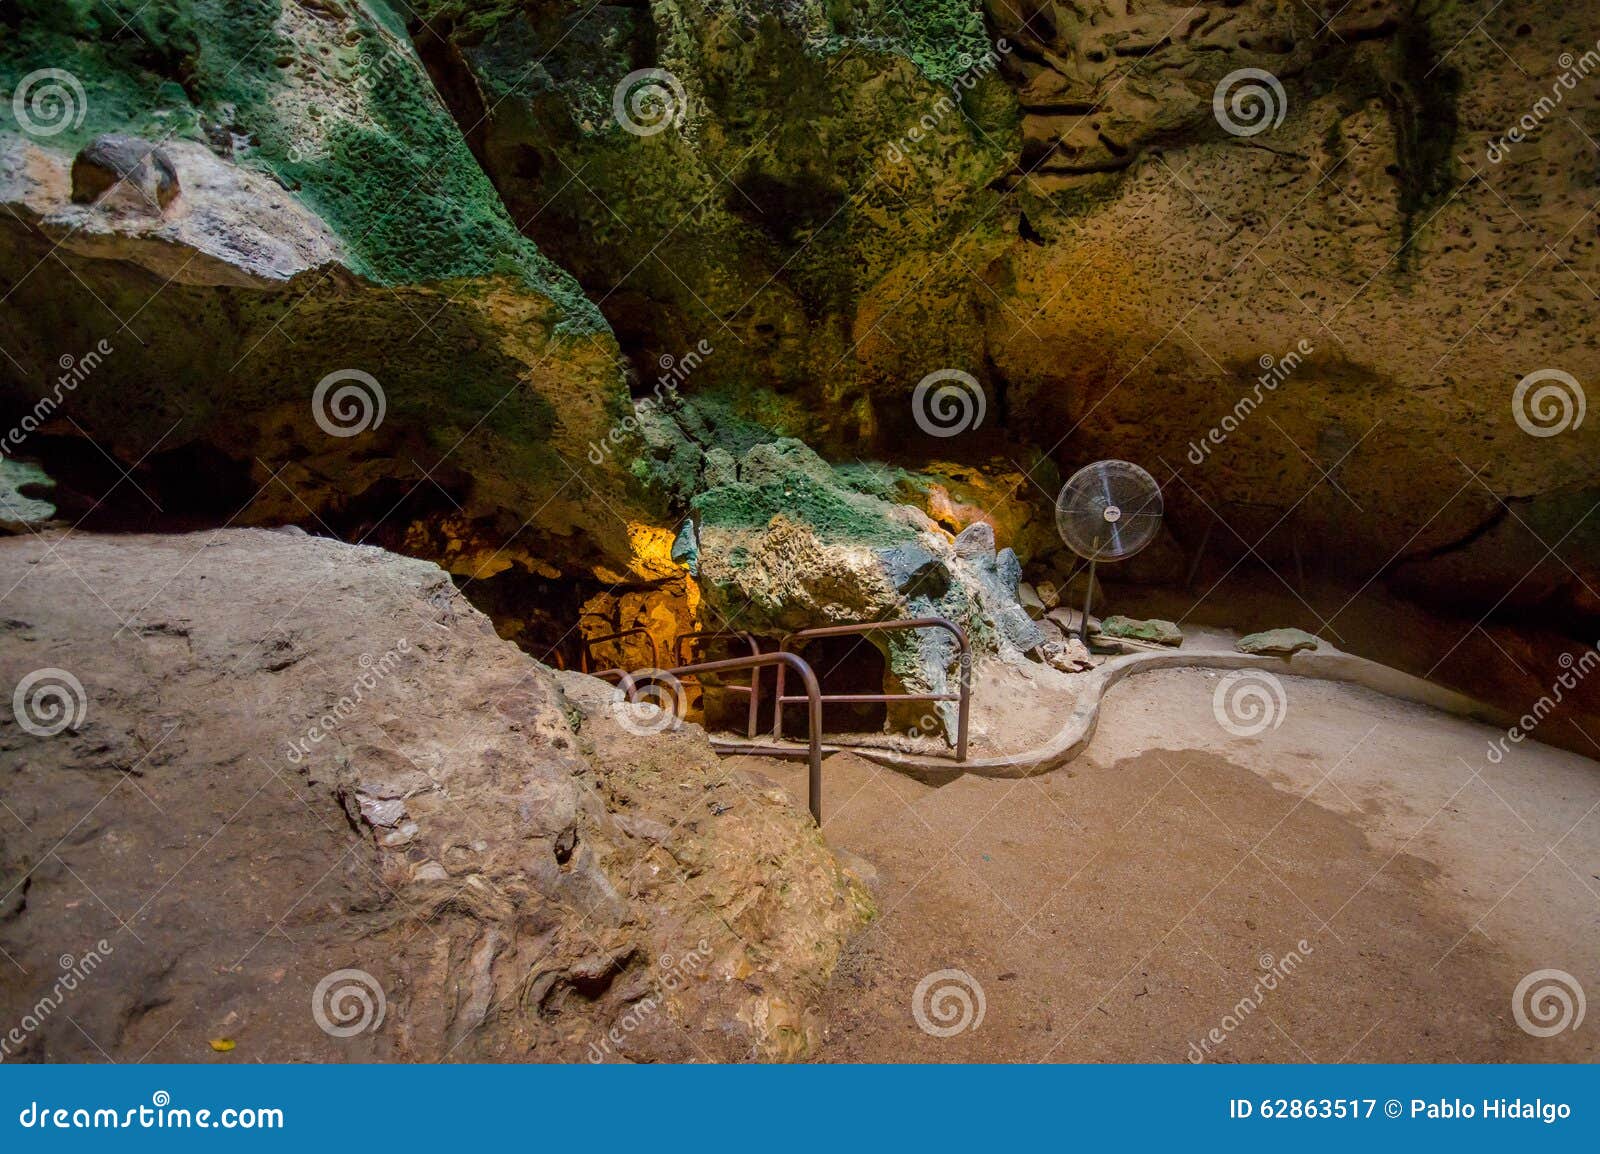 HATO, CURACAO - 2-ОЕ НОЯБРЯ 2015: Пещеры Hato пещеры выставки и популярная туристическая достопримечательность на карибском остро. HATO, CURACAO - 2-ОЕ НОЯБРЯ 2015: Пещеры Hato пещеры выставки и туристическая достопримечательность a популярная на карибском острове